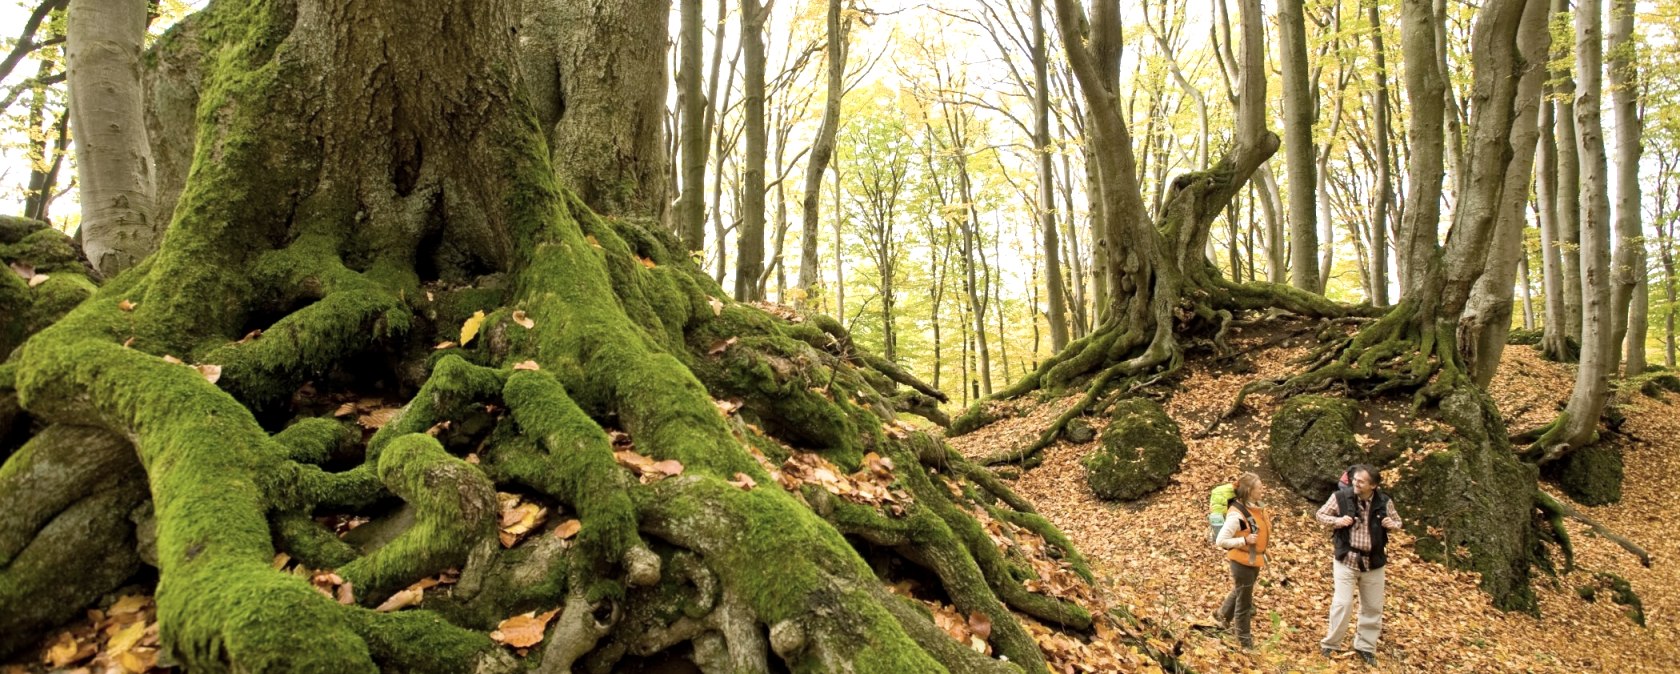 Der Herbstwald auf der Etappe 10 des Eifelsteigs, © Rheinland-Pfalz Tourismus/D. Ketz